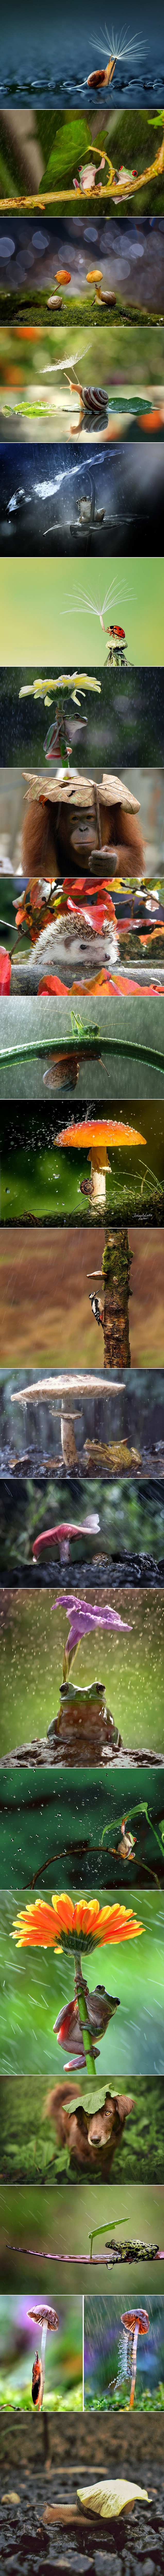 GALERIJA: Pametne životinjice pobijedile oluju prirodnim kišobranom